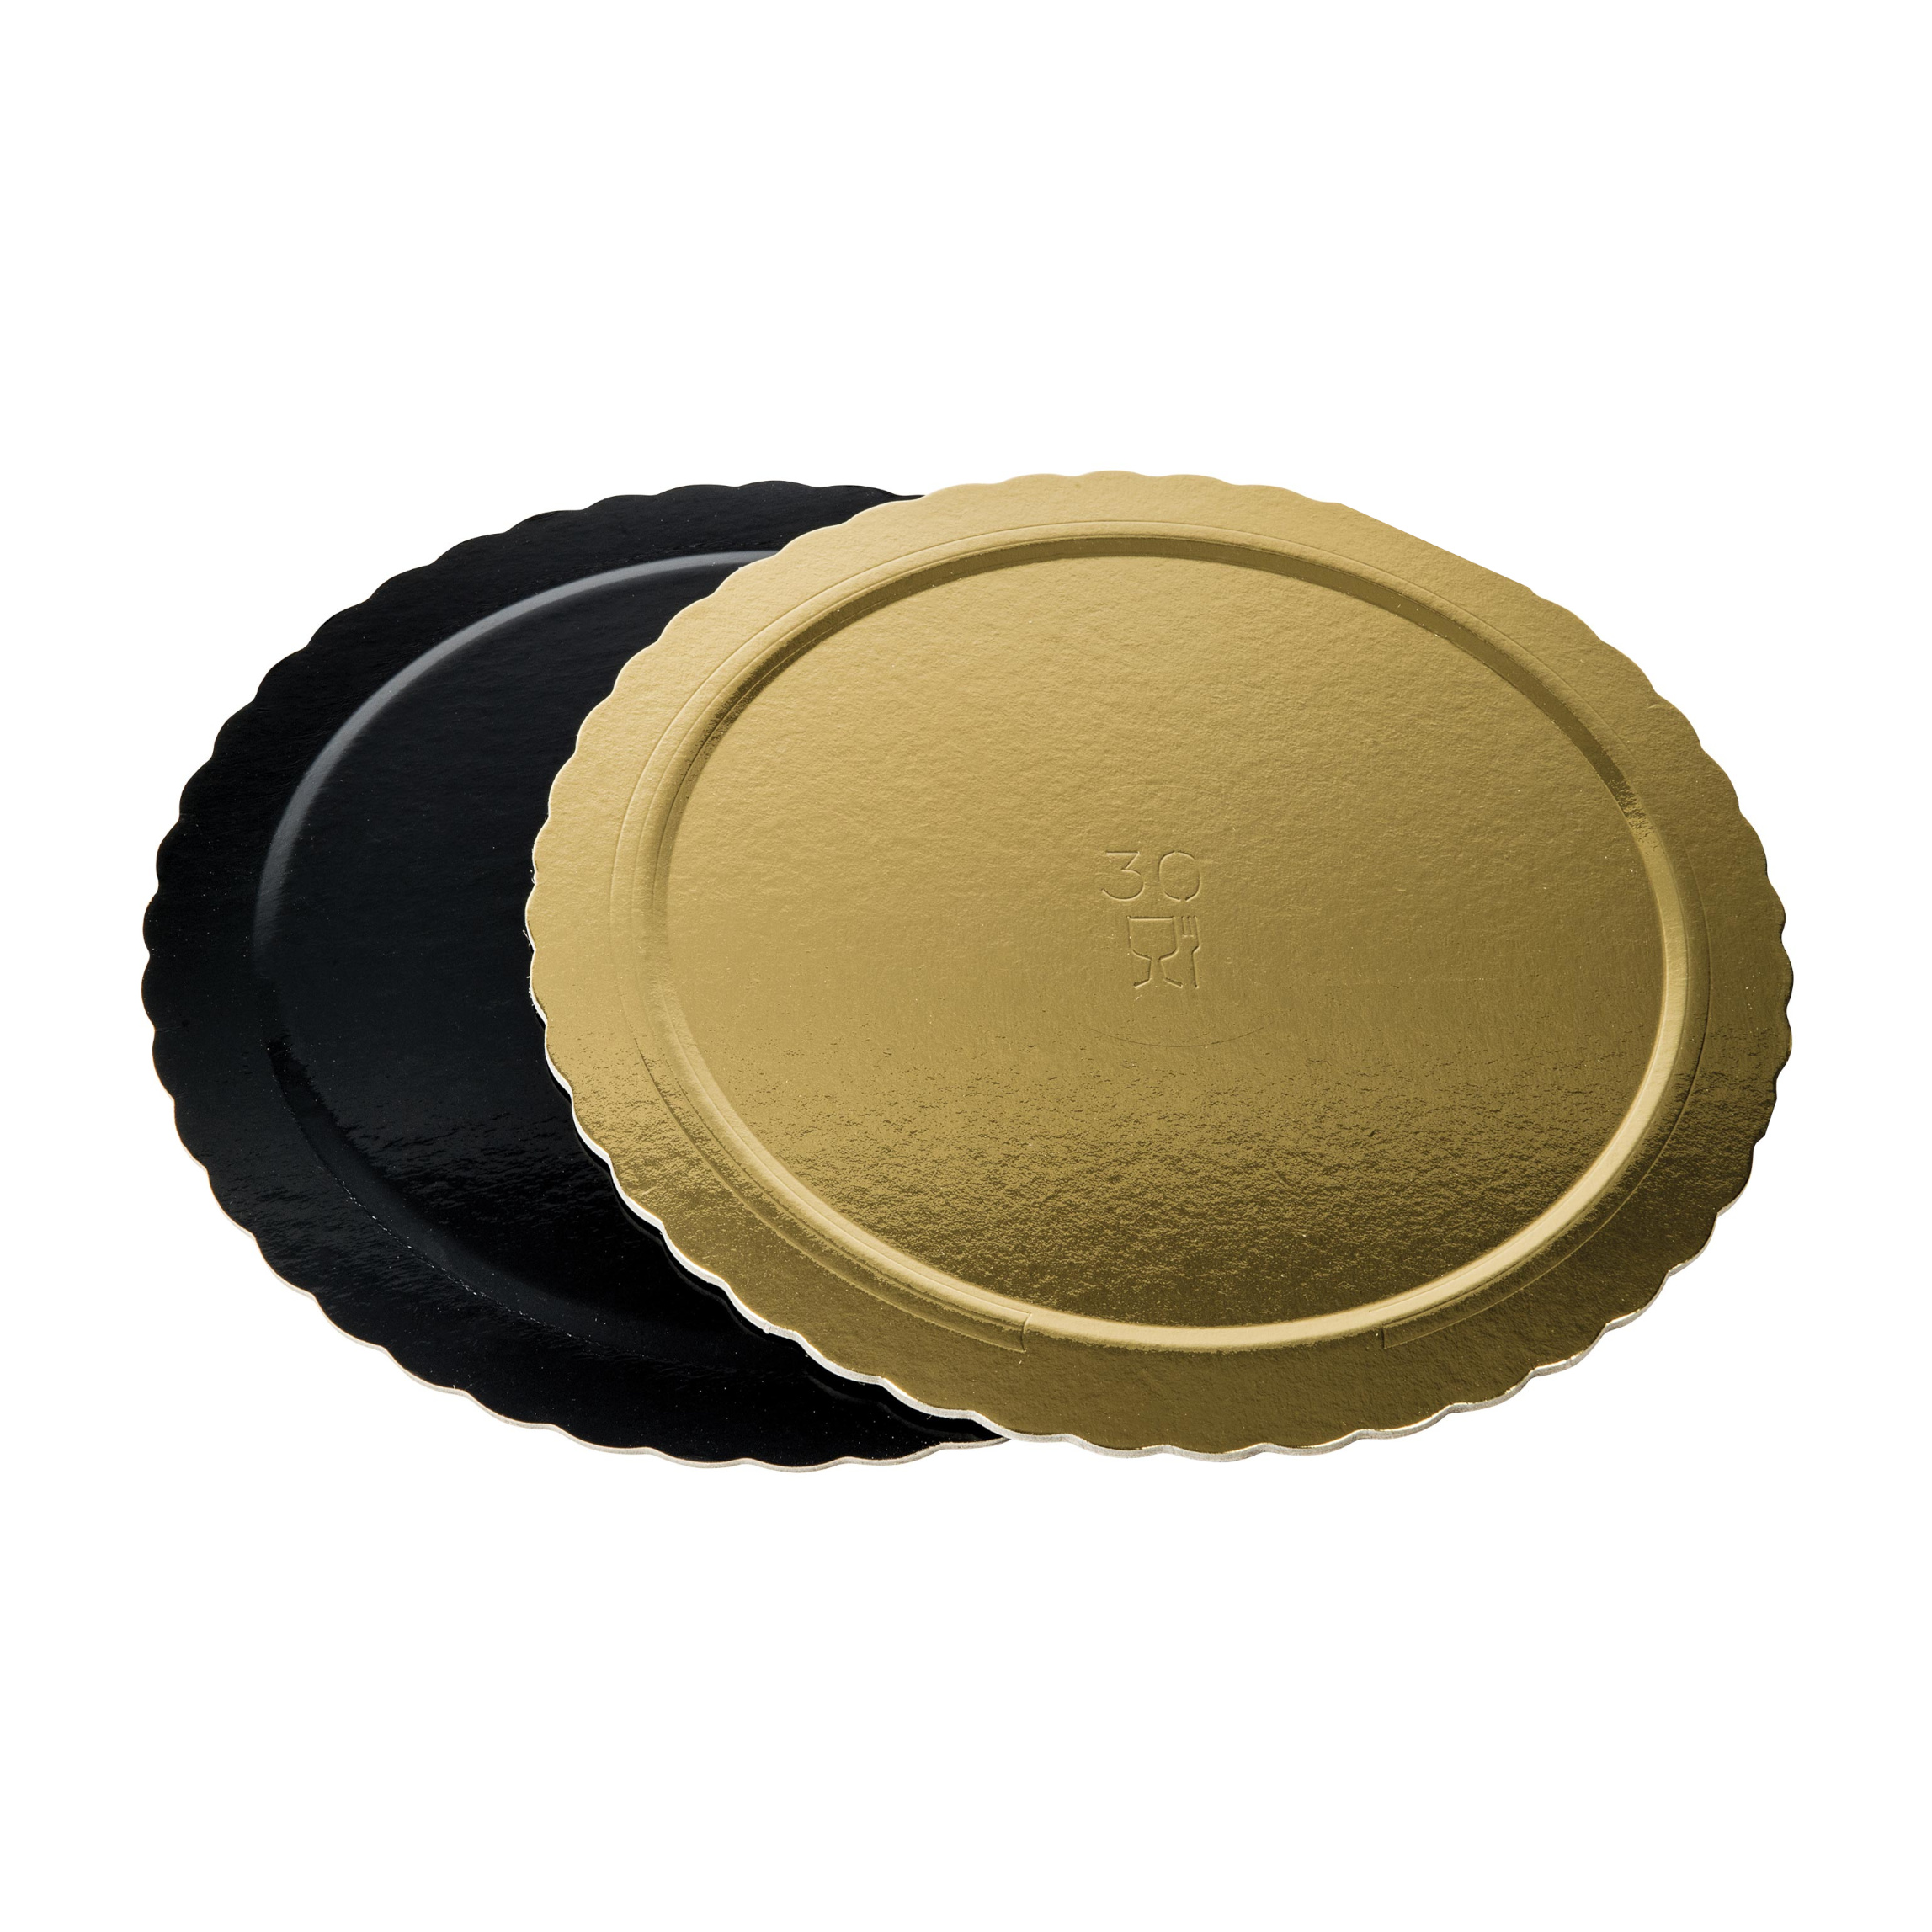 Dischi sottotorta kappati oro/nero 26cm pacchetto da 10kg